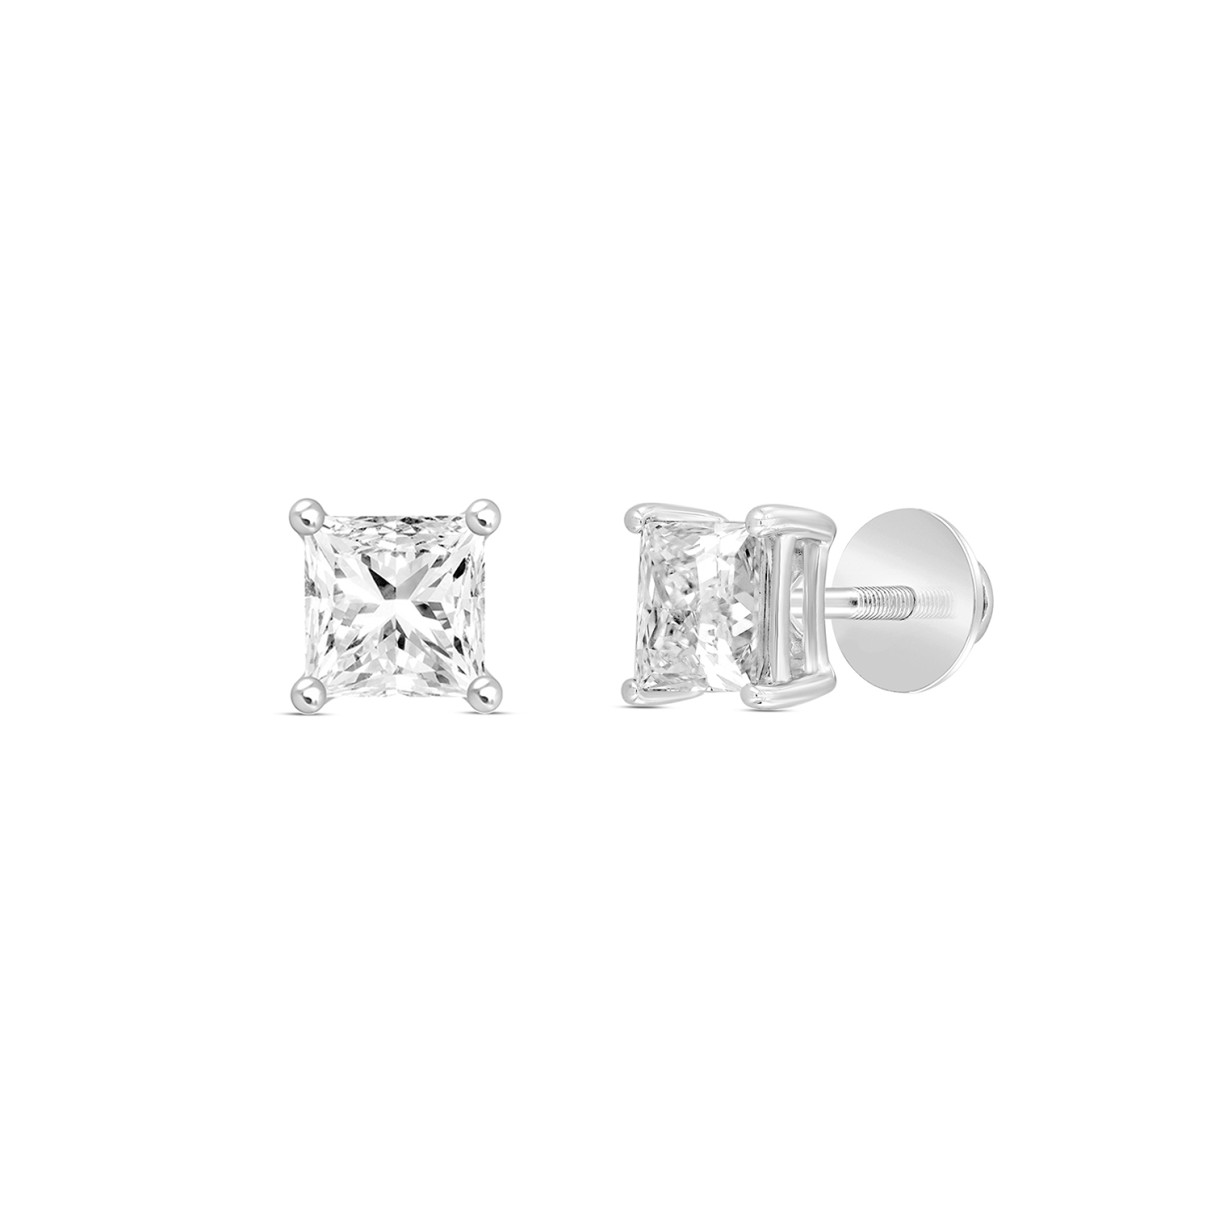 LADIES SOLITAIRE EARRINGS 1/2CT PRINCESS DIAMOND 14K WHITE GOLD (CENTER STONE PRINCESS DIAMOND 1/4CT )